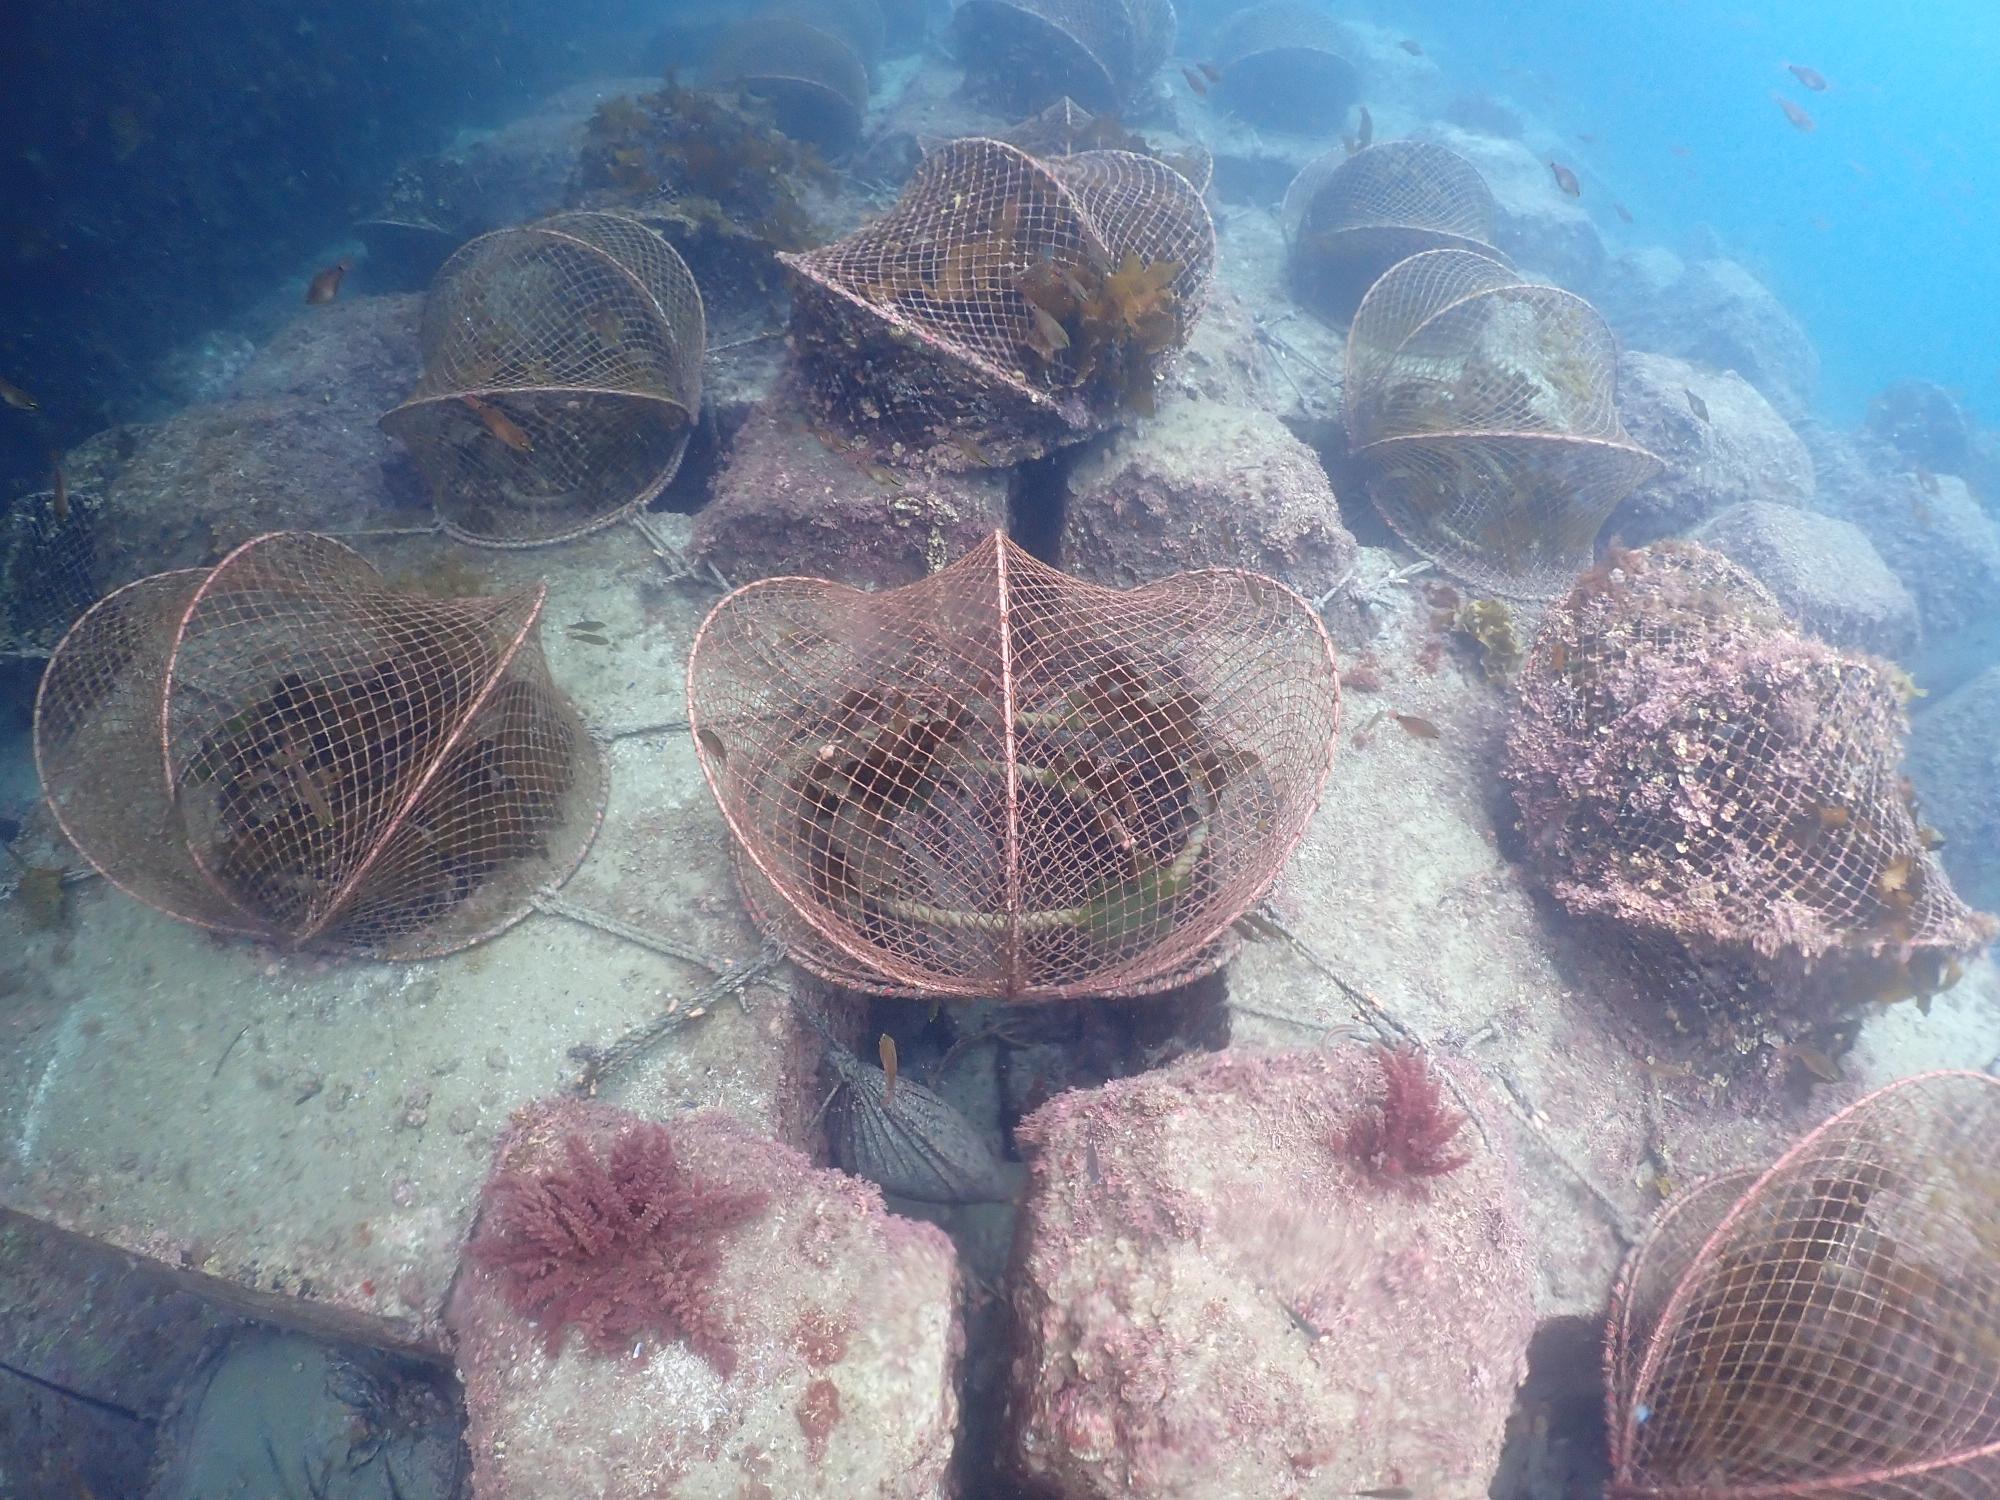 海底に12個並べられた海藻の保護枠の画像。海藻を食べる生物から守り育てる取り組みが行われている。